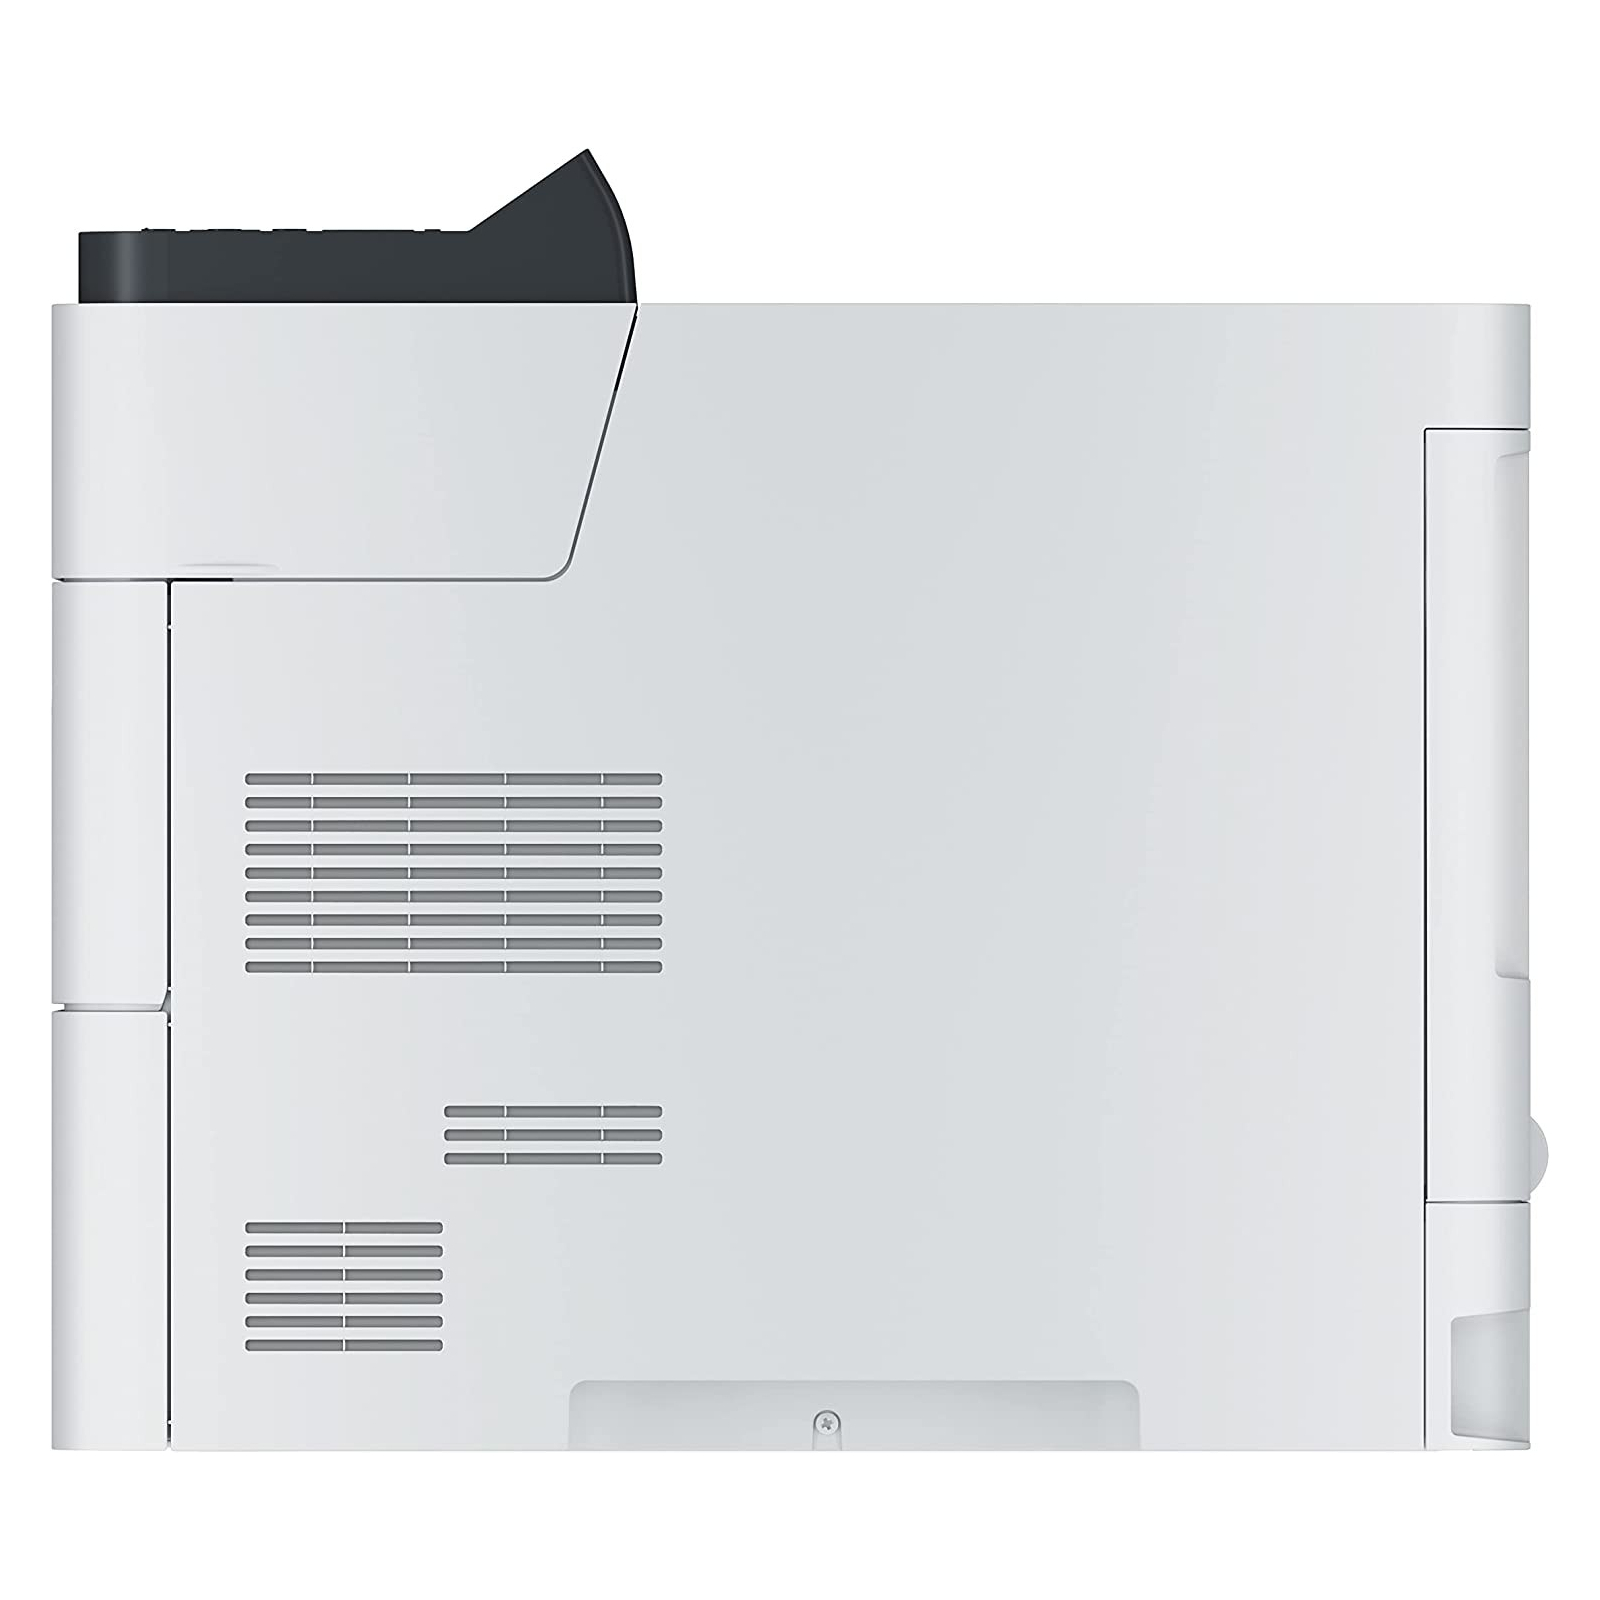 Лазерный принтер Kyocera PA6000x (110C0T3NL0) изображение 4